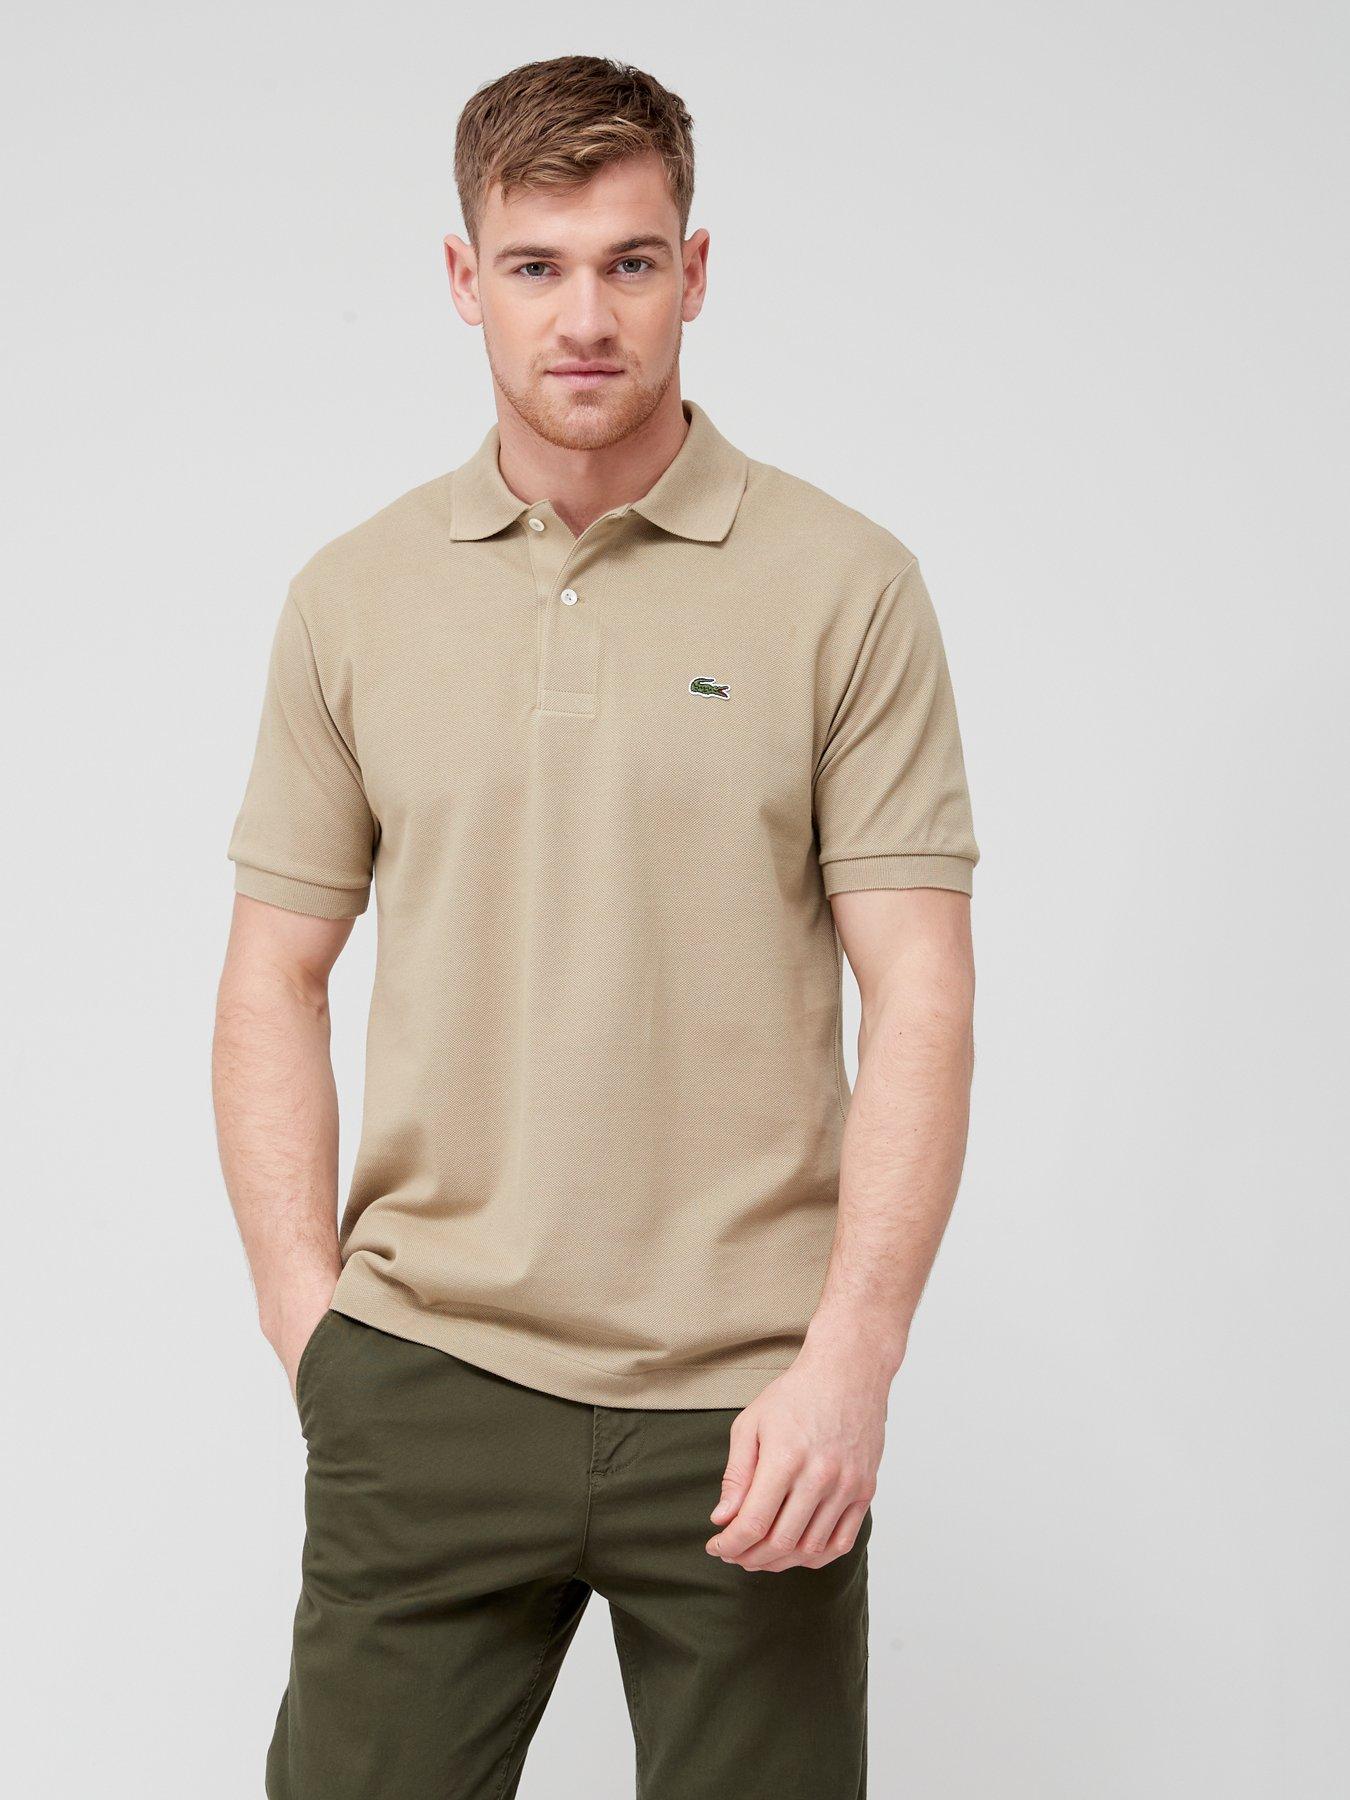 Lacoste Classic L.12.12 Pique Polo Shirt - Brown, Brown, Size L, Men